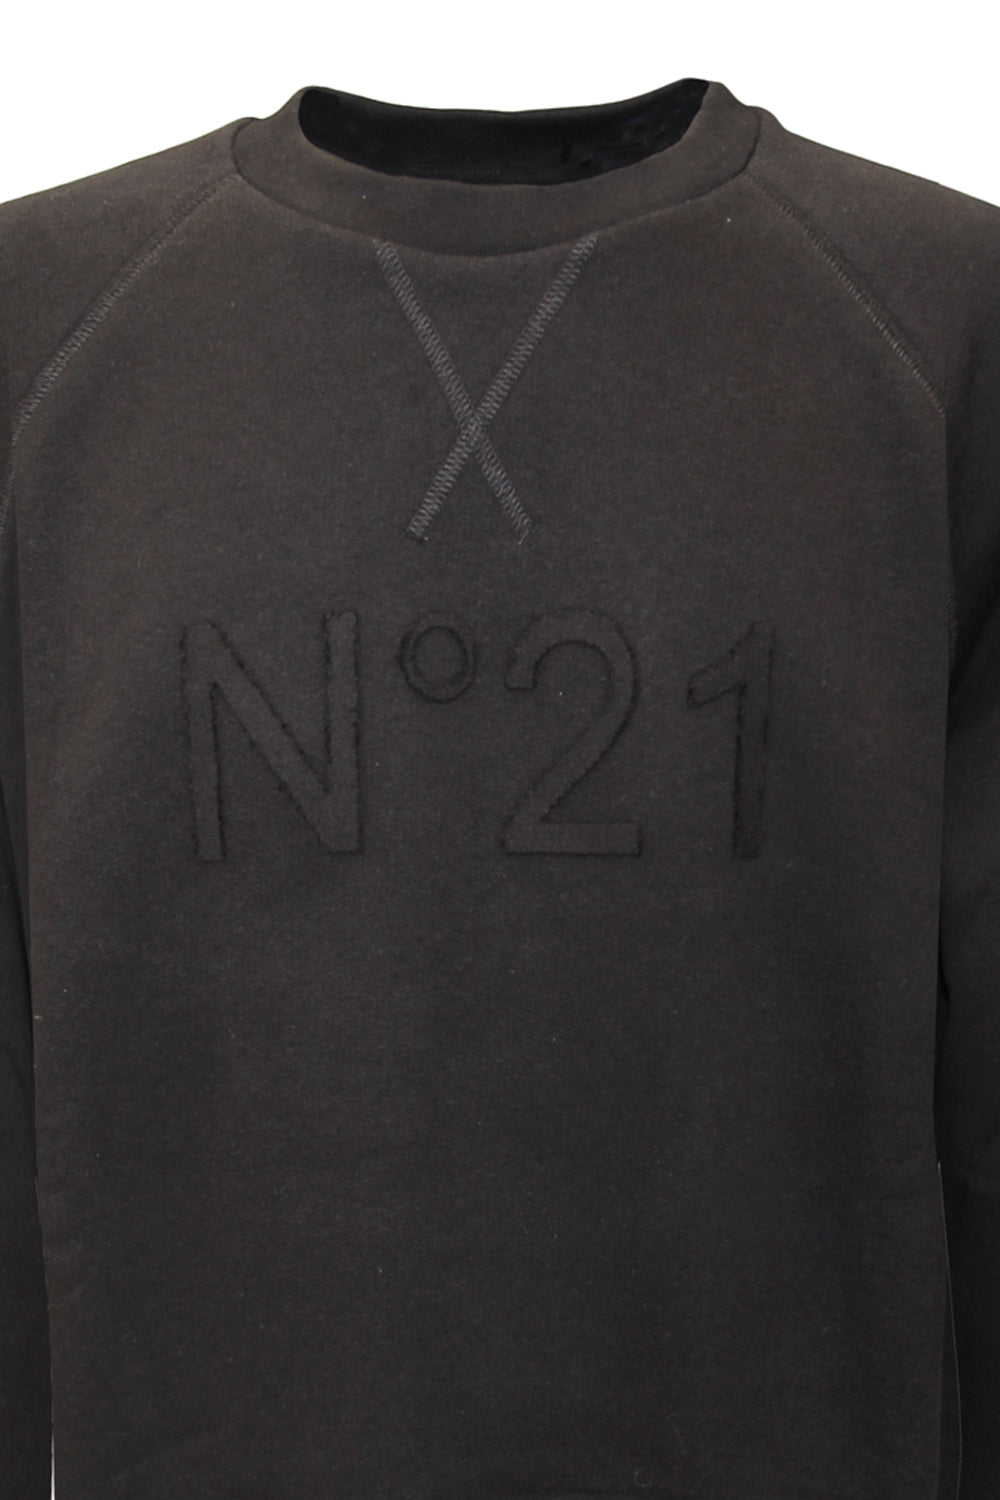 N21 Felpa con logo tono su tono